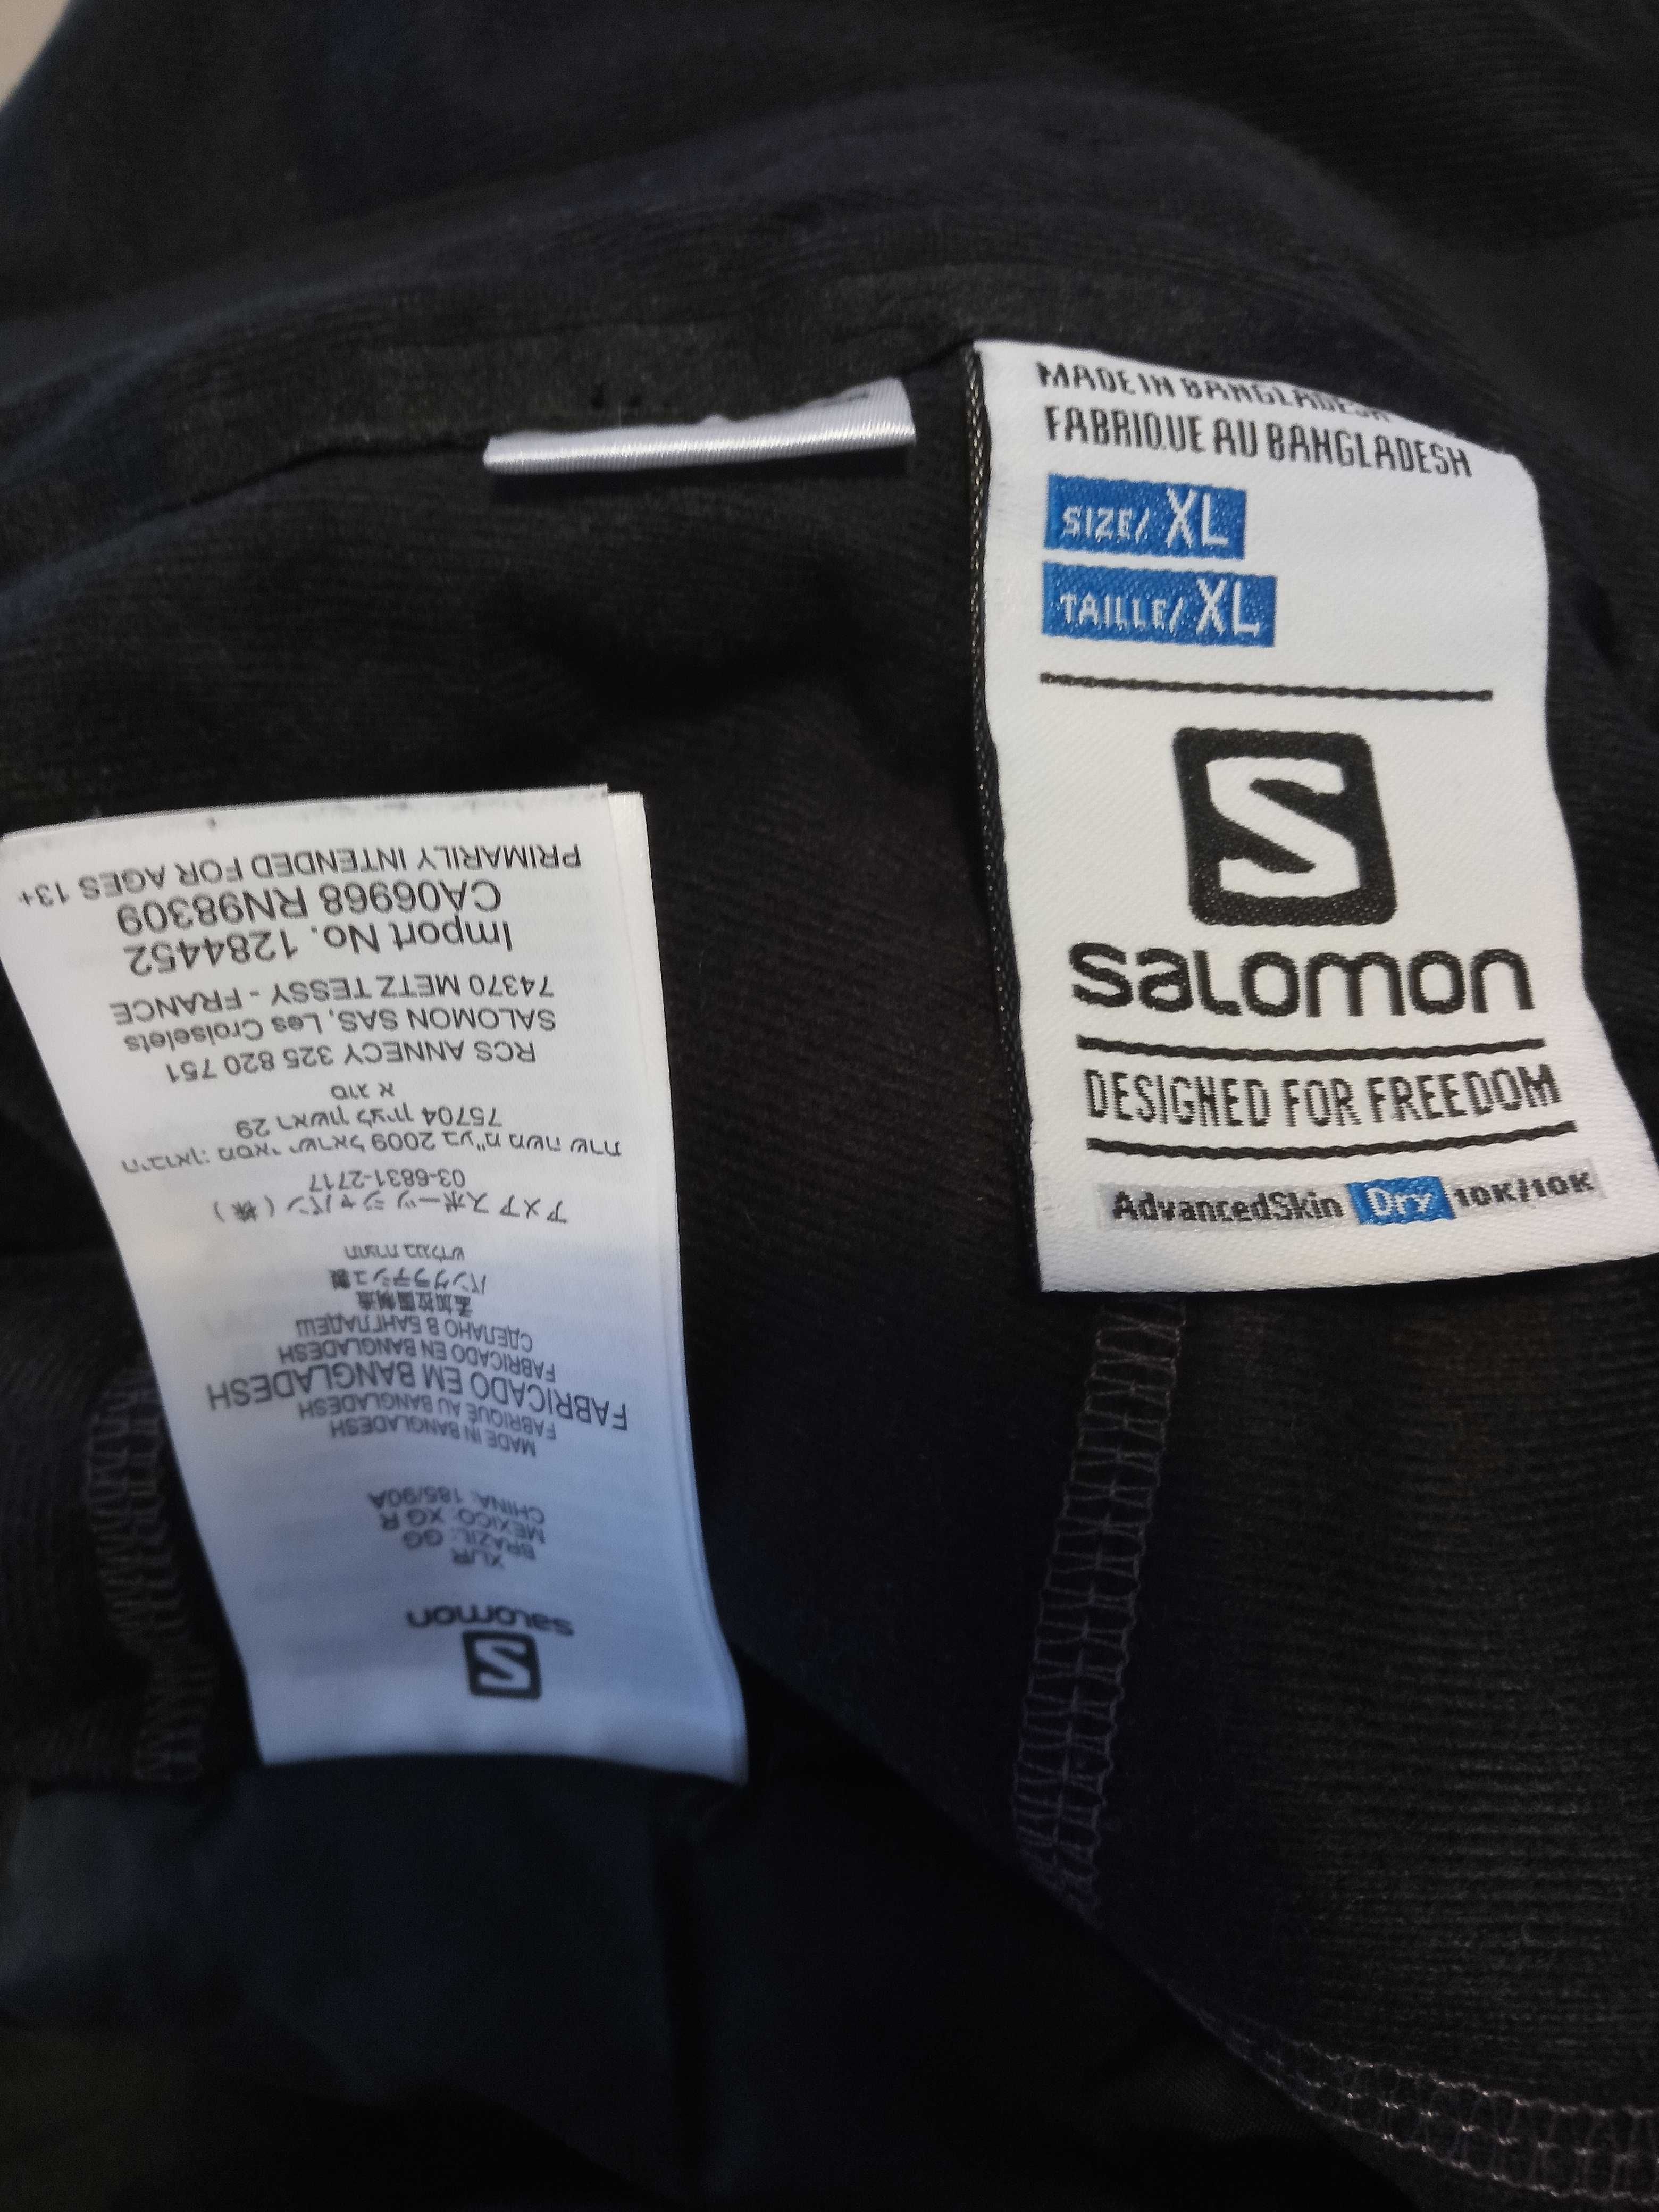 salomon spodnie XL narciarskie męskie advancedskin dry 10k